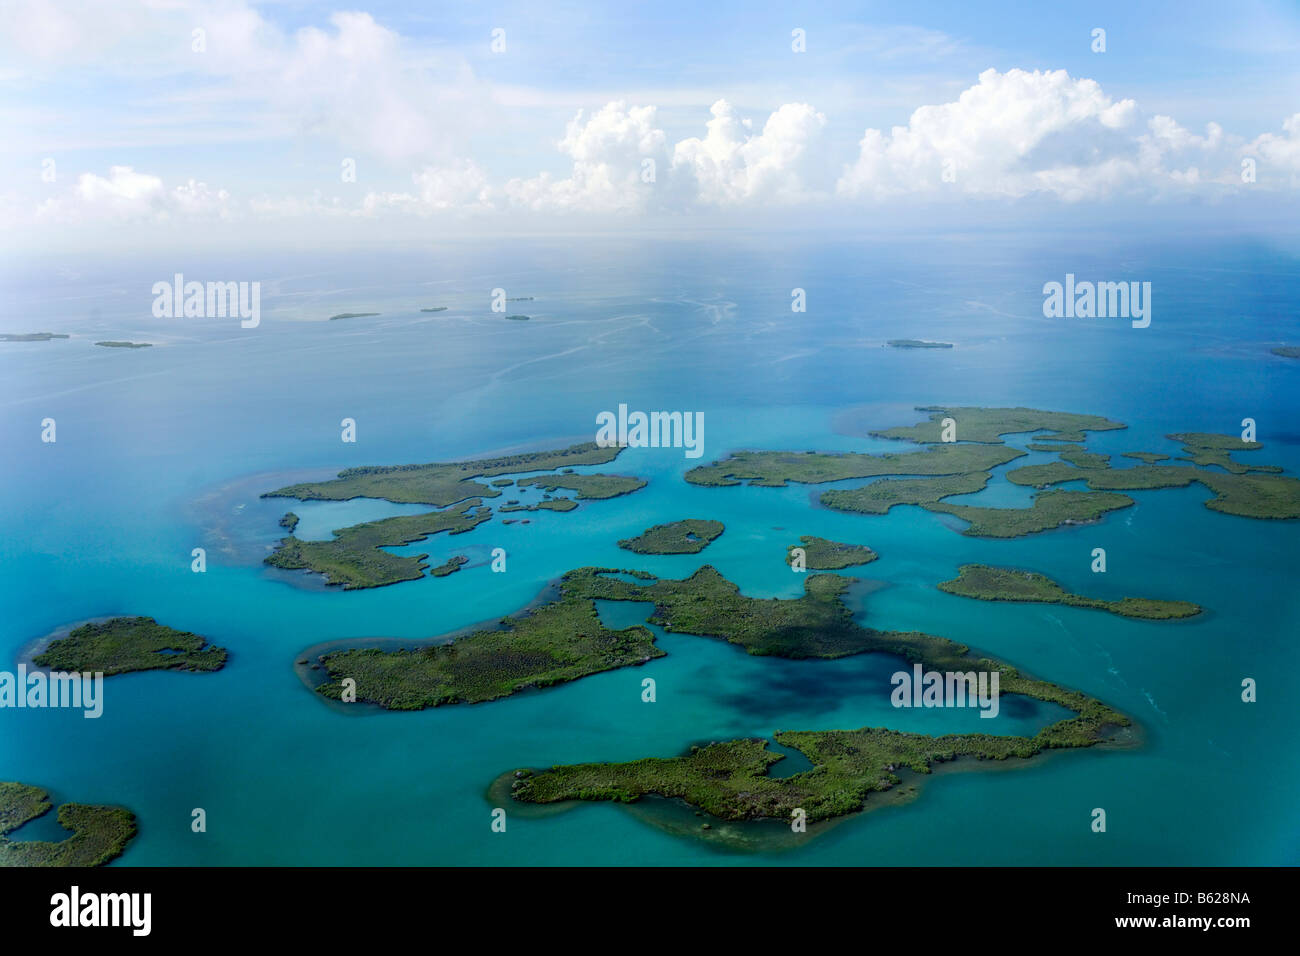 Los manglares en el océano, fotografía aérea, costa entre Dagria y Punta Gorda, Belice, Centroamérica, El Caribe Foto de stock